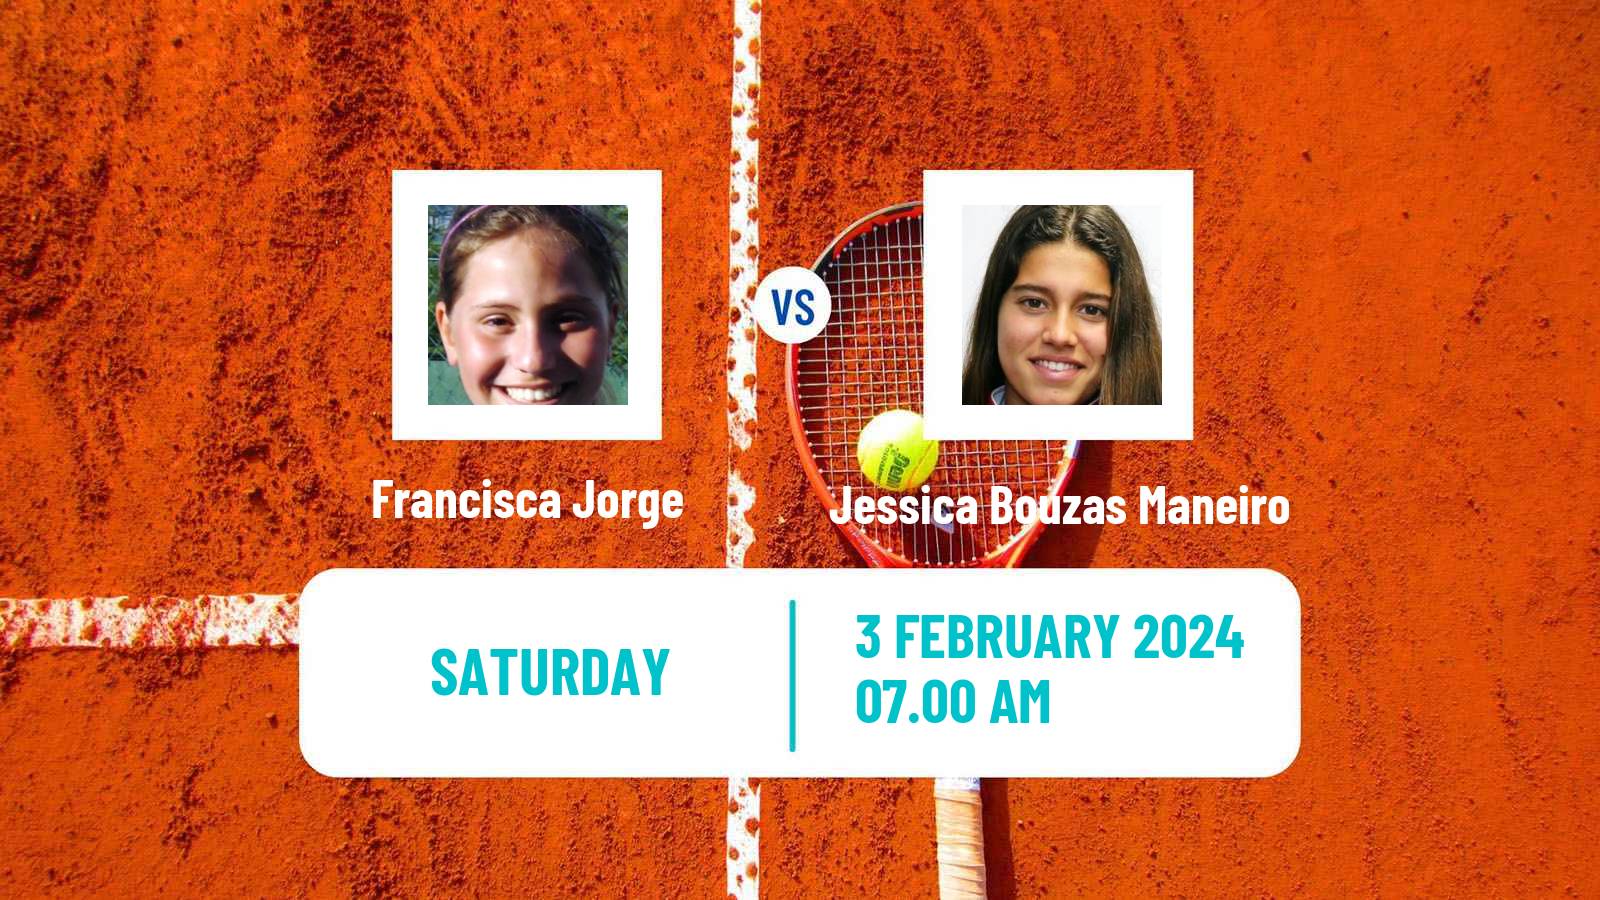 Tennis ITF W50 Porto Women Francisca Jorge - Jessica Bouzas Maneiro